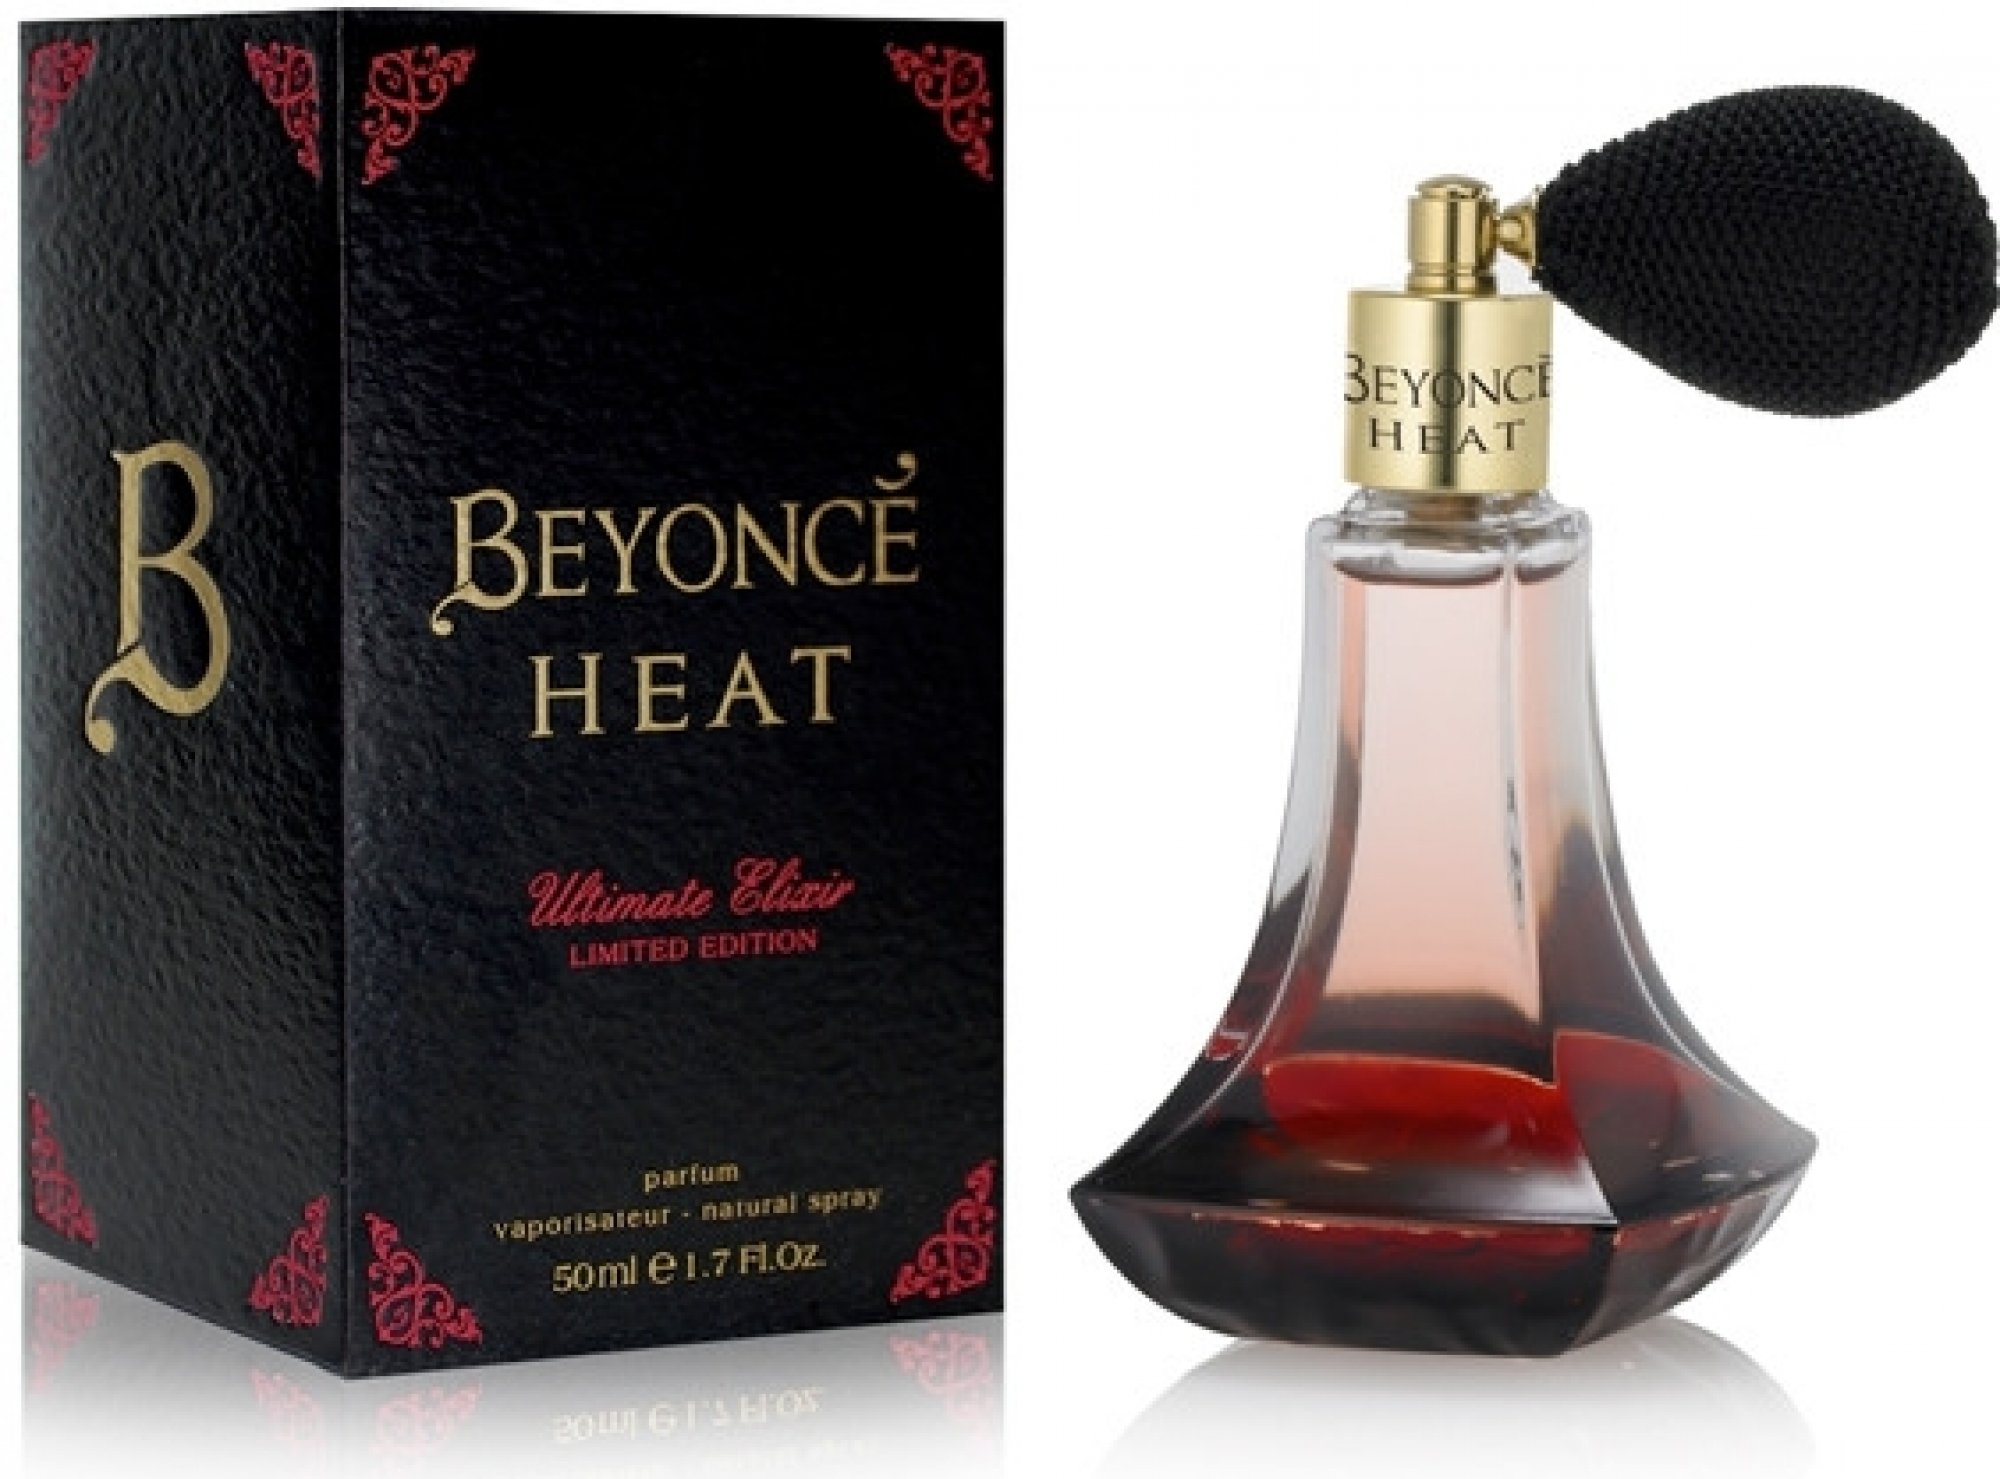 Beyonce Heat Ultimate Elixir, edp 50ml